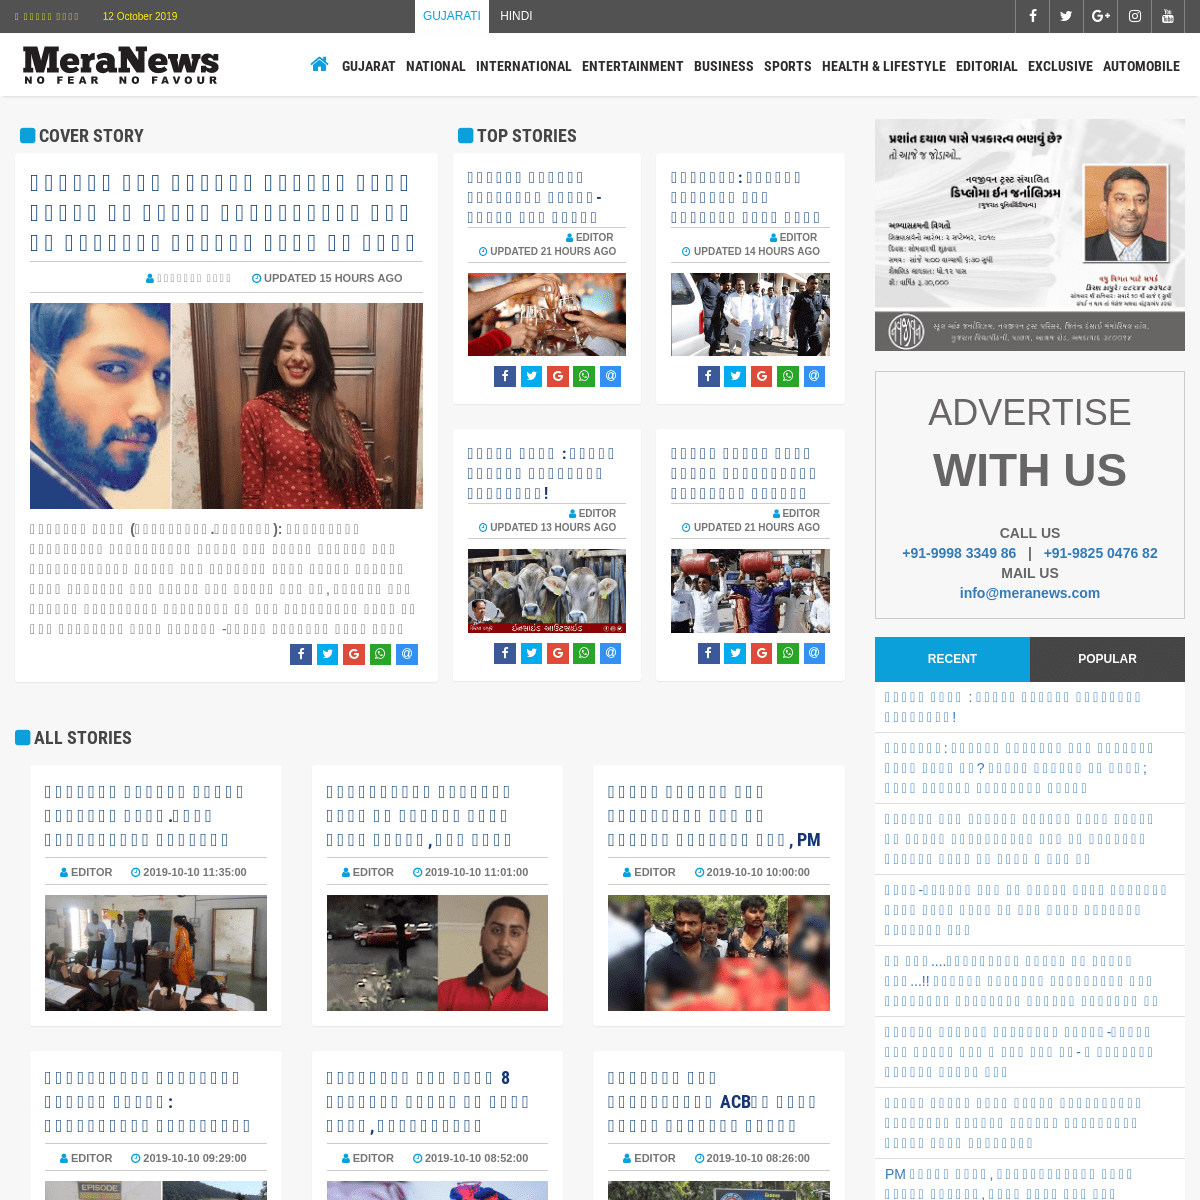 A complete backup of meranews.com